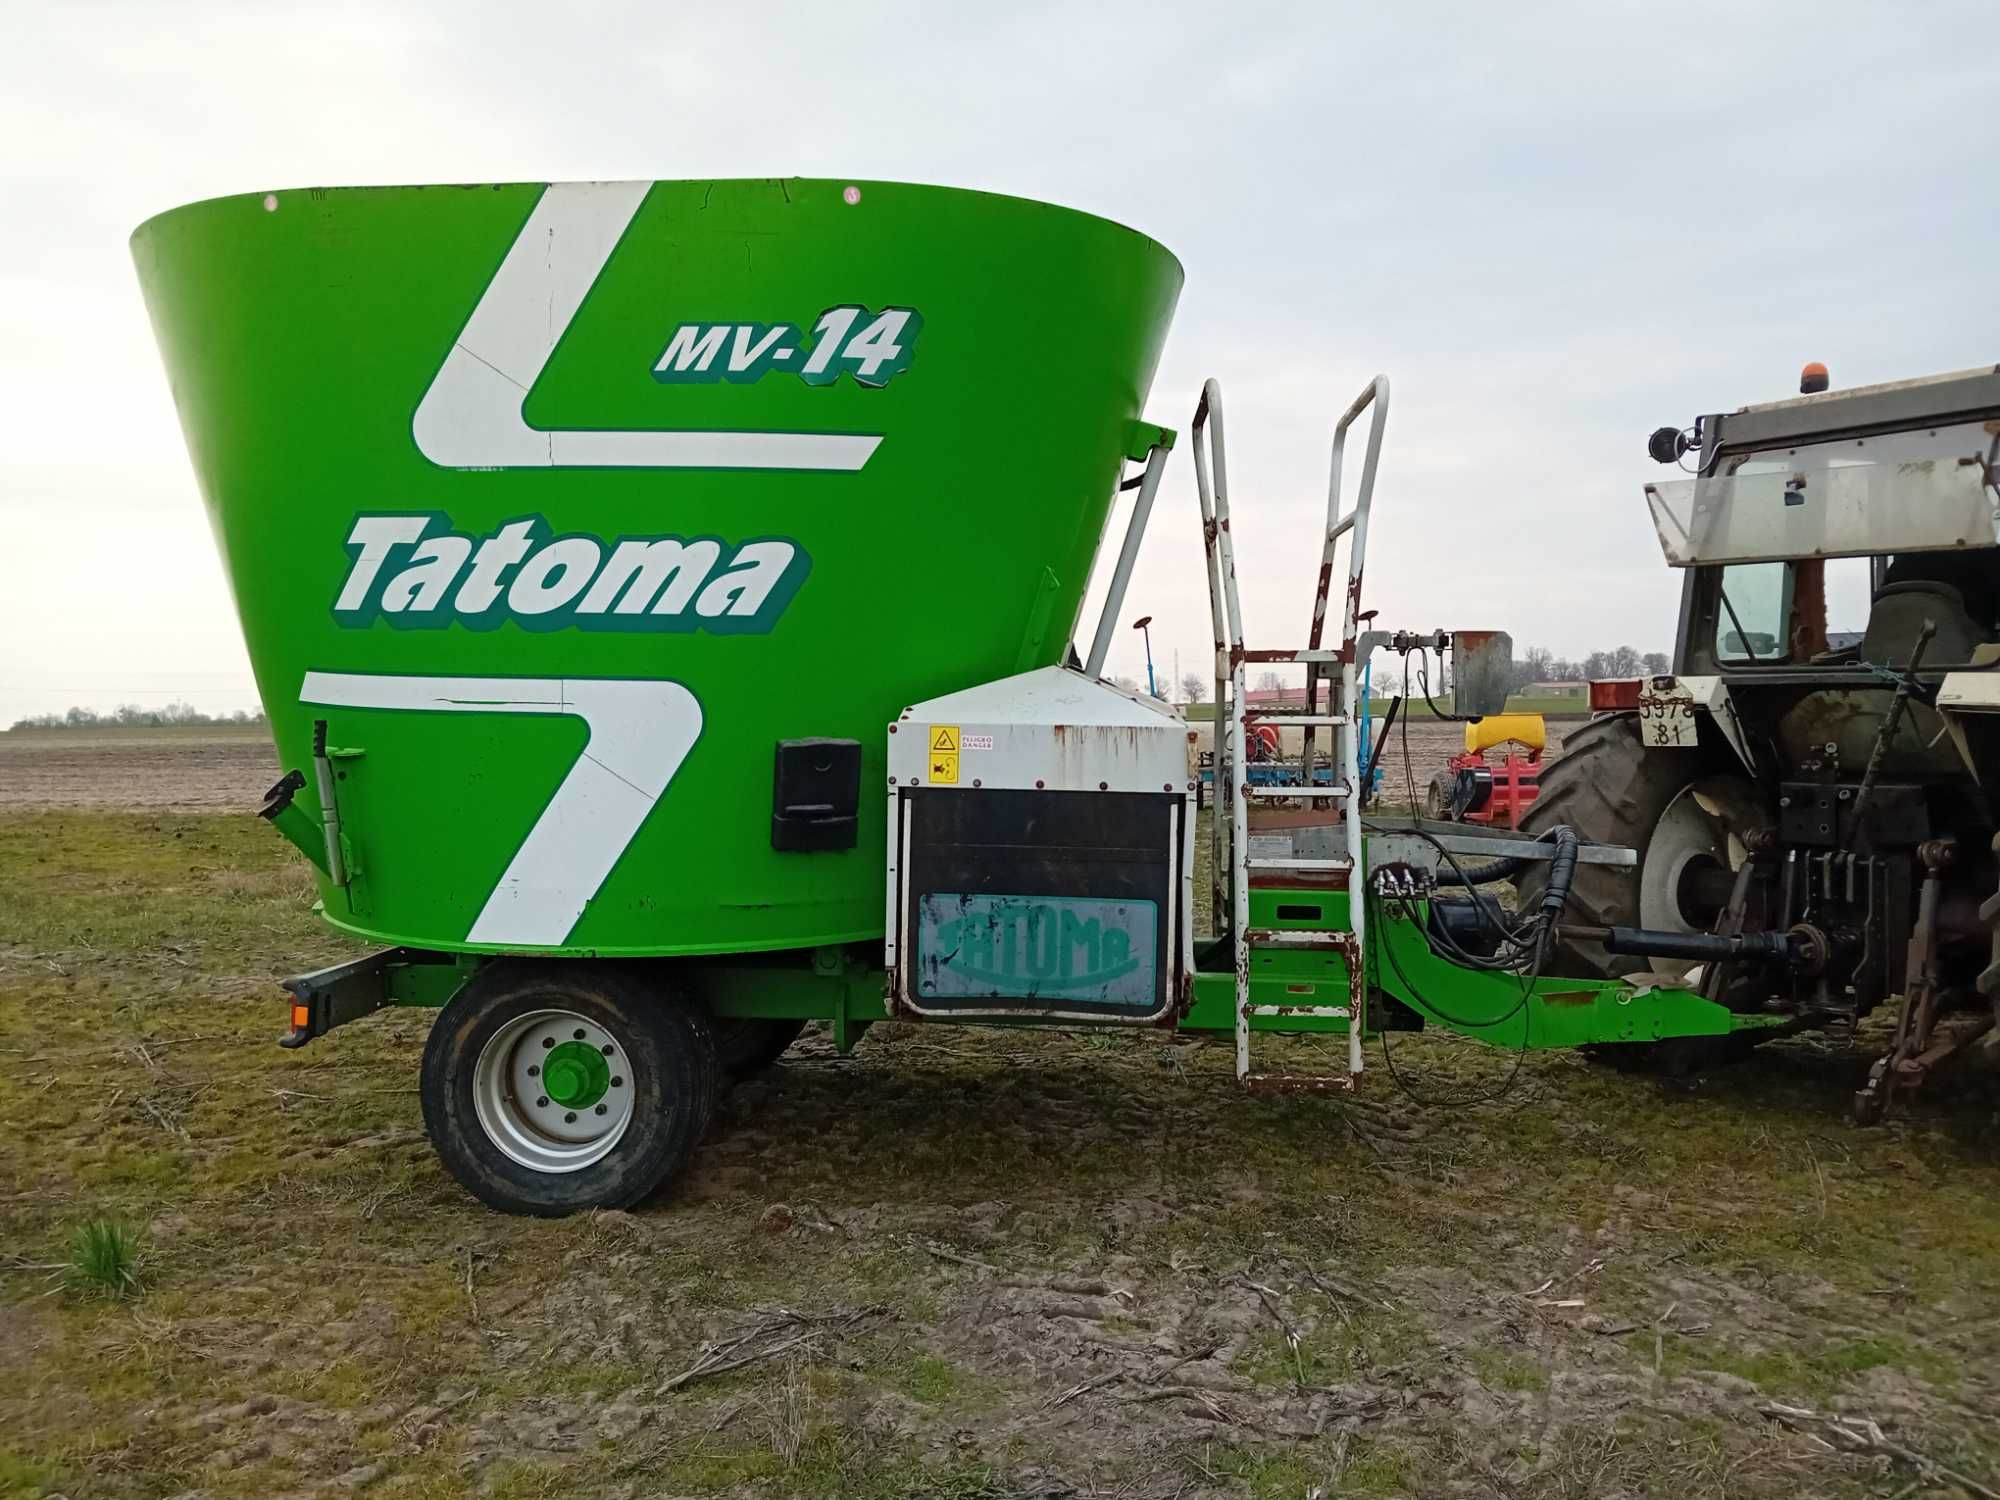 Paszowóz  Tatoma MV-14 Wóz paszowy 2014r jak nowy kennan 300